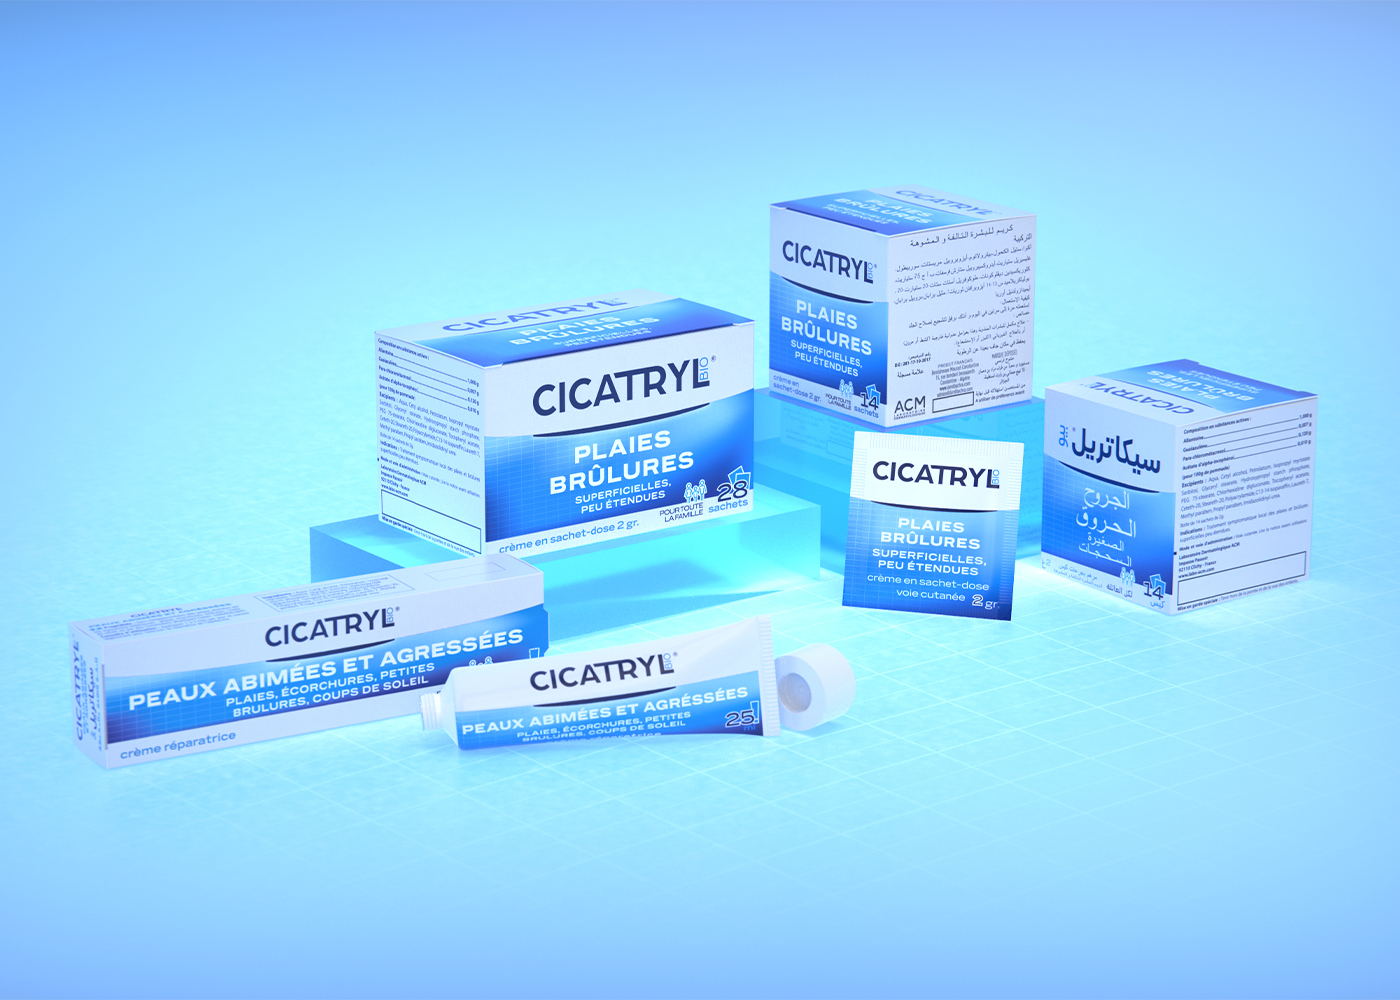 Cicatryl Bio - Création de l'identité de marque et du design packaging pour la gamme Plaies Brûlures